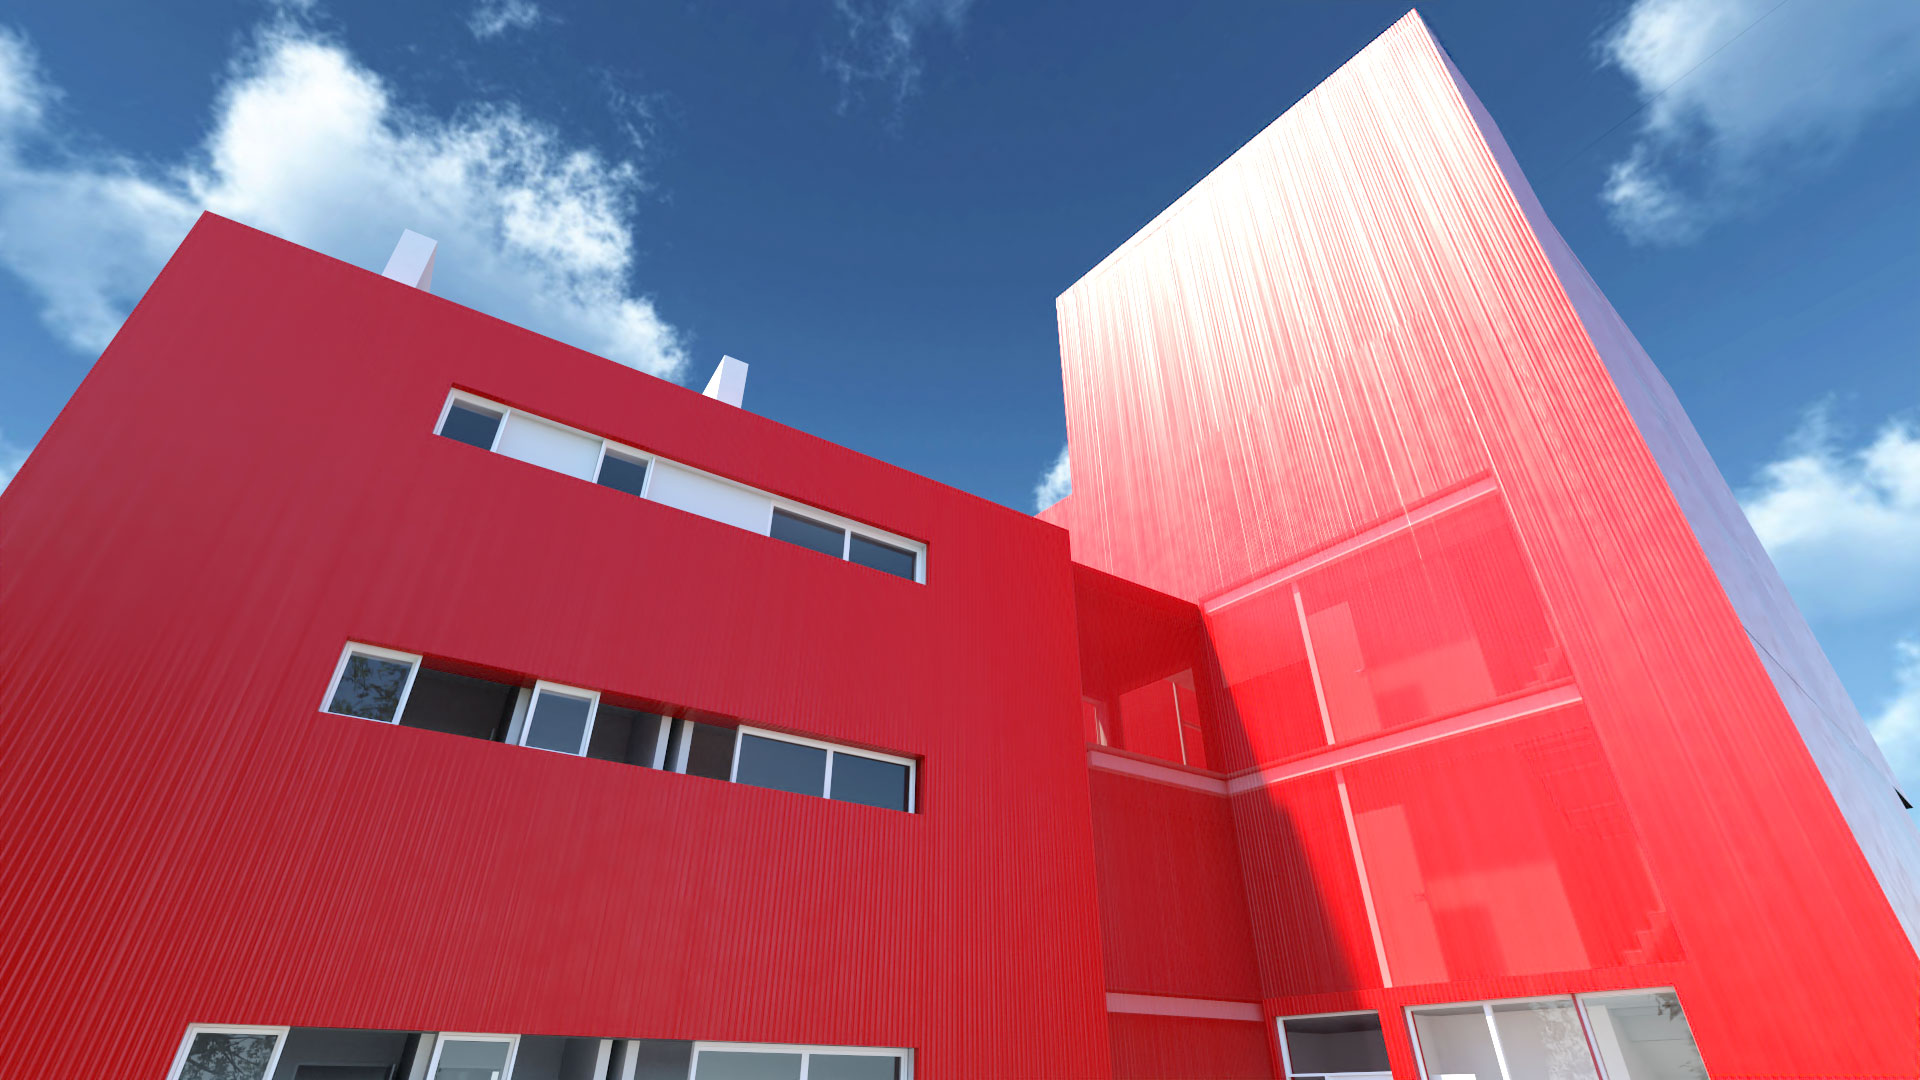 Résidence bâtiment rouge slider08.jpg